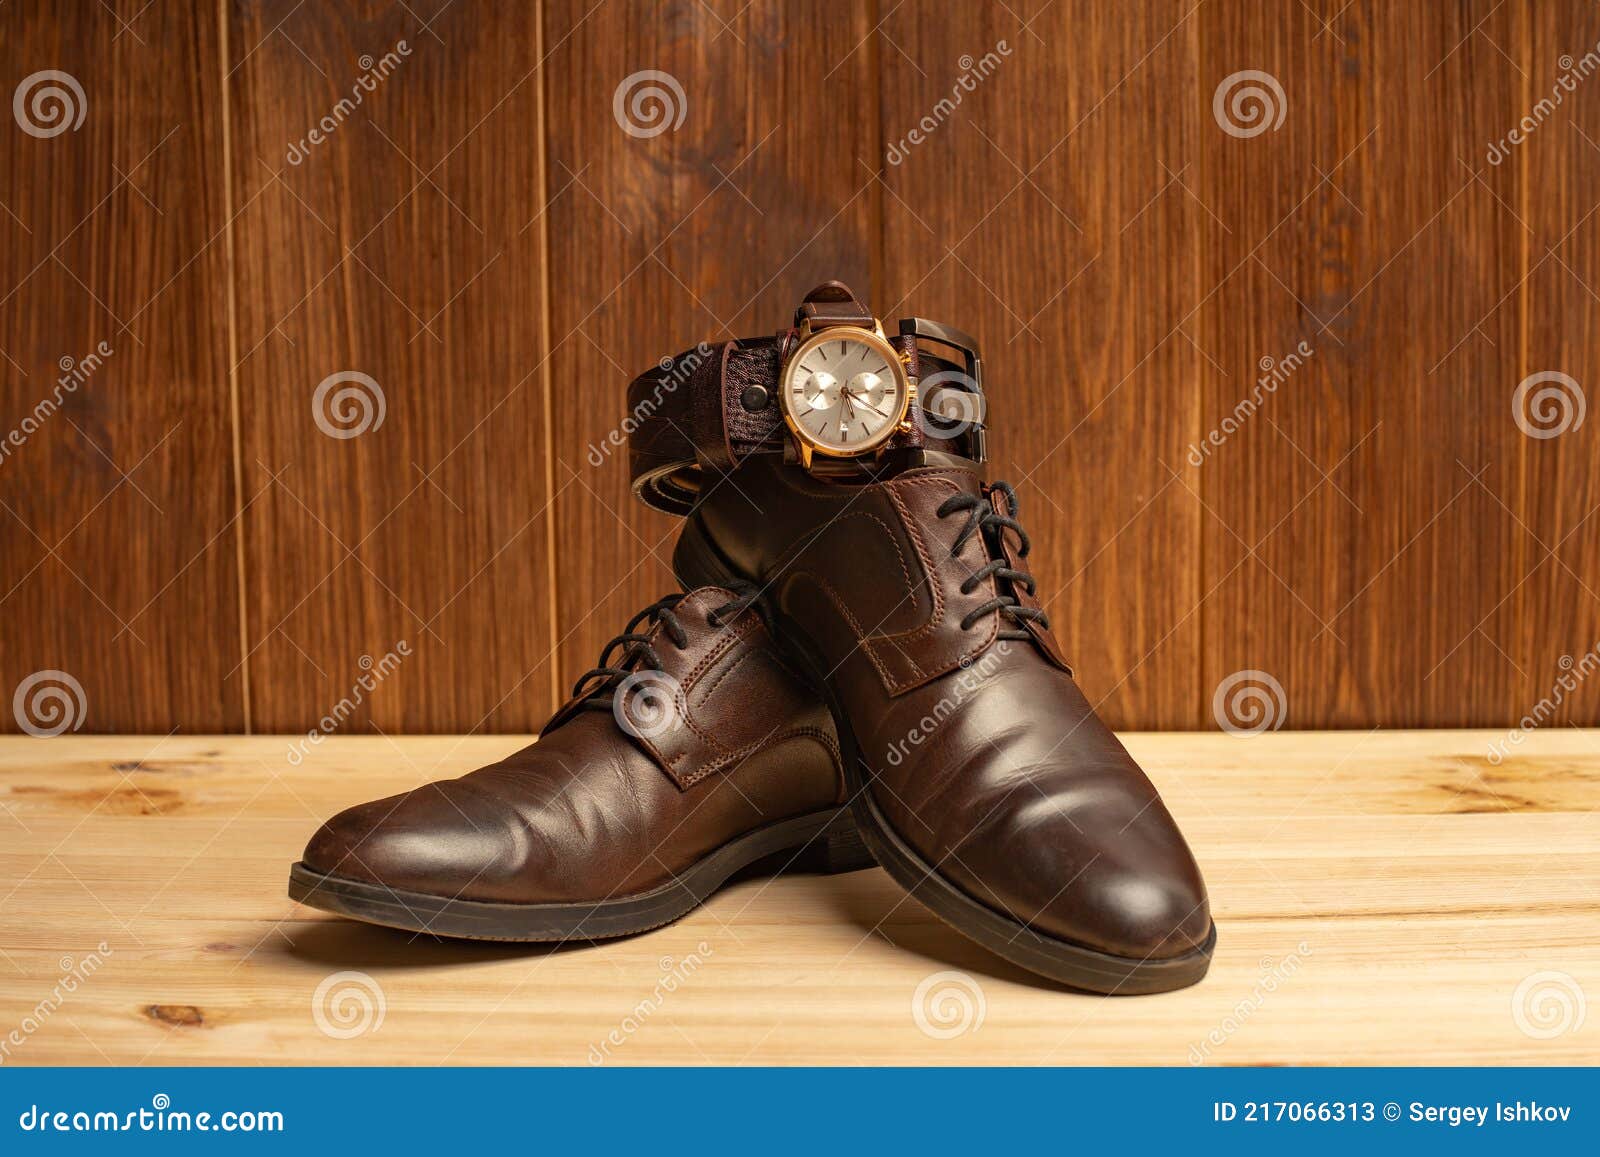 Para Hombre Con Zapatos De Cinturón De Cuero Marrón Y Reloj Fondo De Madera Imagen de archivo - de tapa, estilo: 217066313